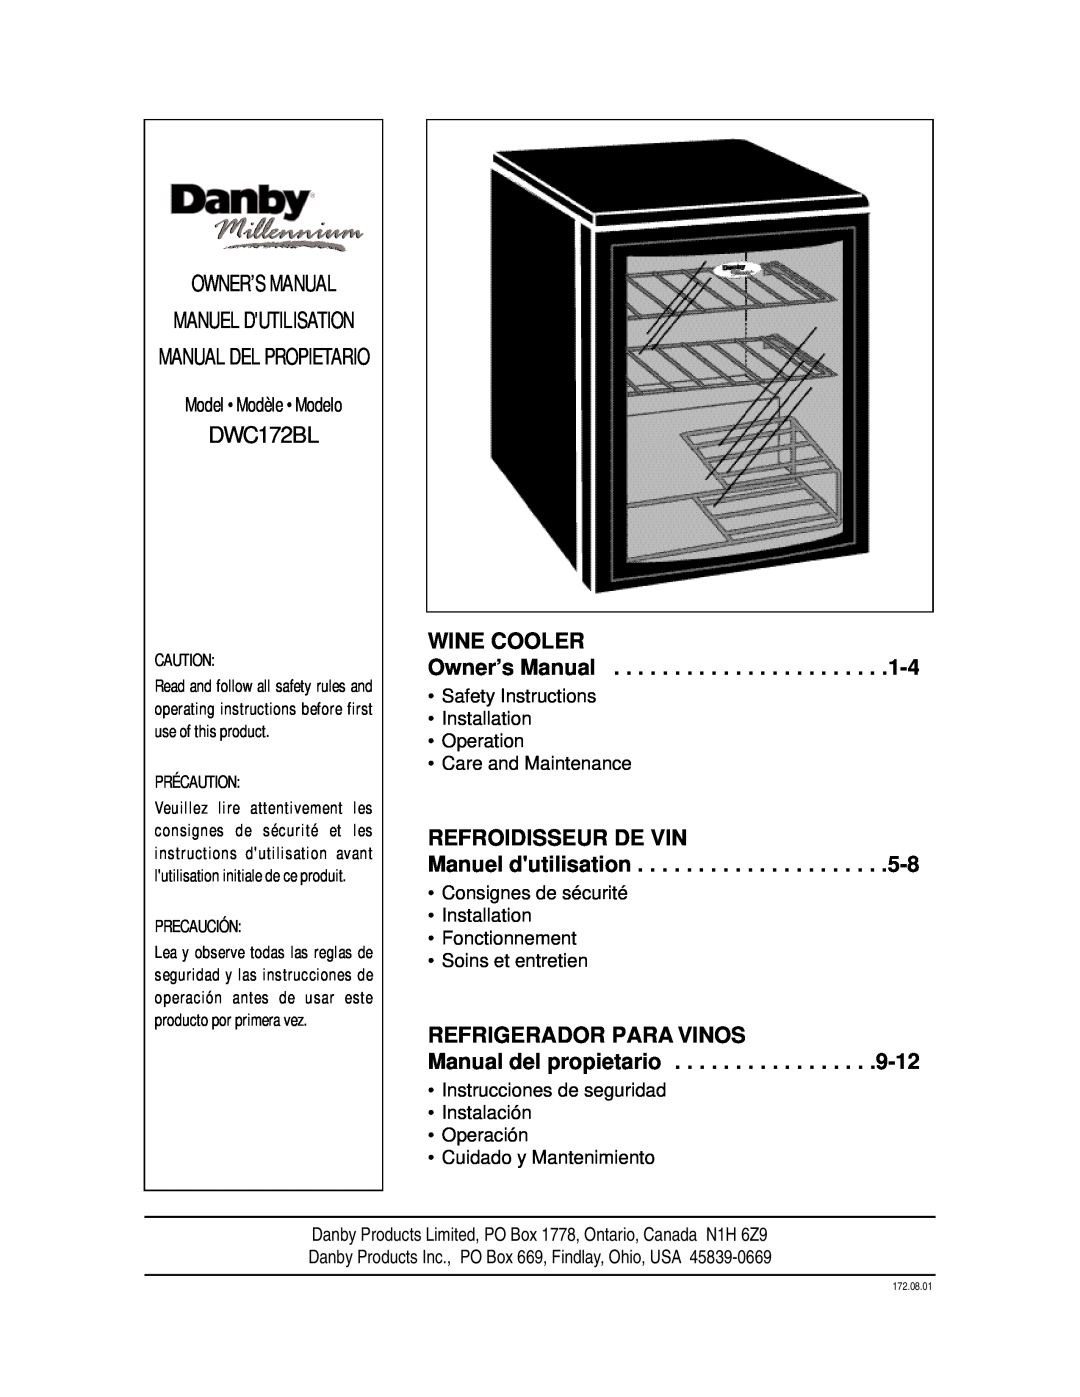 Danby DWC172BL Manuel Dutilisation, Wine Cooler, Refroidisseur De Vin, Refrigerador Para Vinos, Précaution, Precaución 